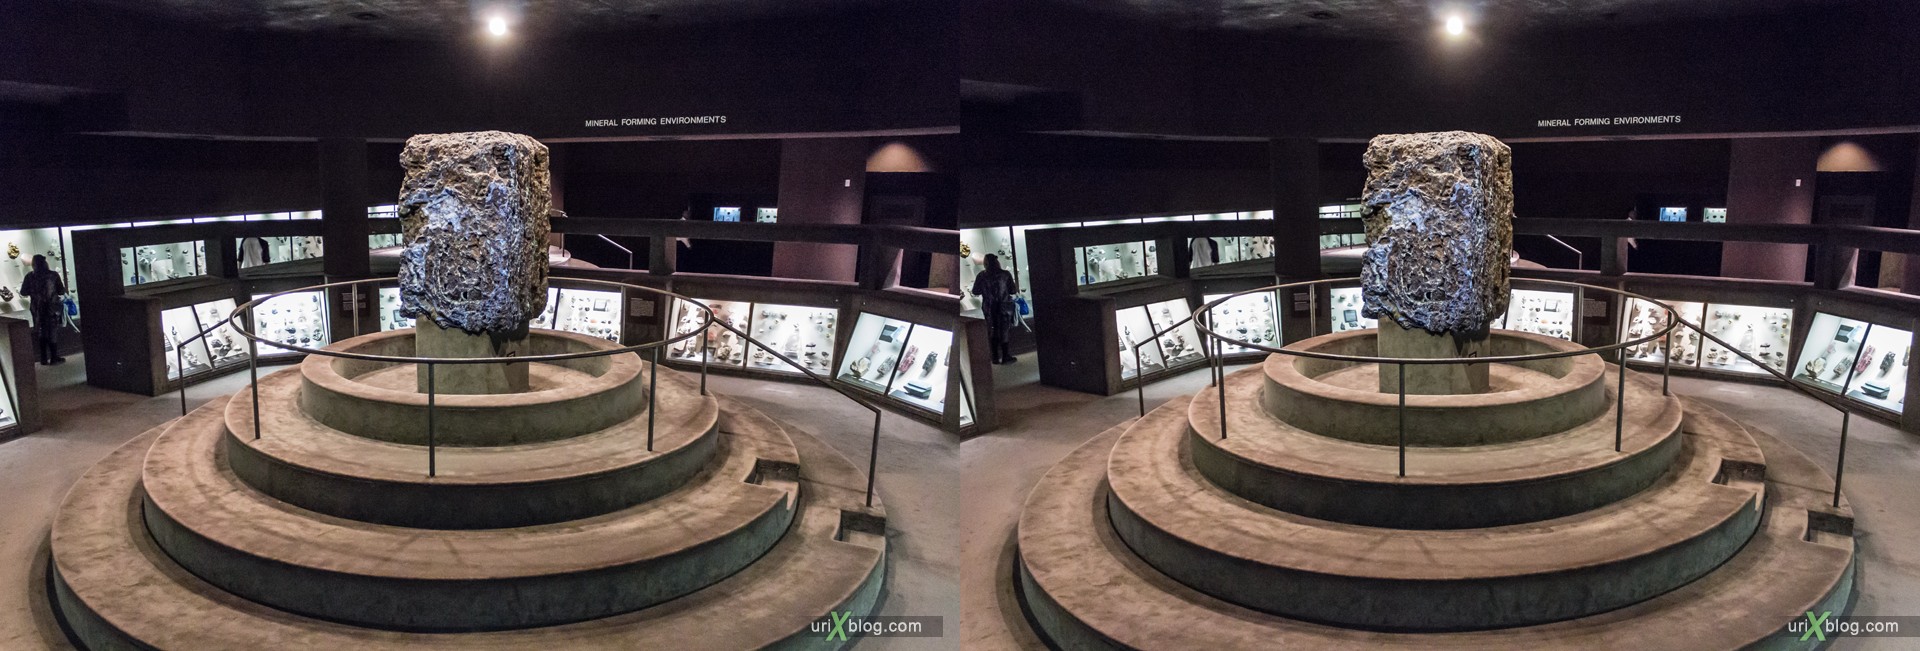 2013, Американский Музей Естественной Истории, Нью-Йорк, США, Скелет, Донозавр, животное, чучело, 3D, перекрёстные стереопары, стерео, стереопара, стереопары